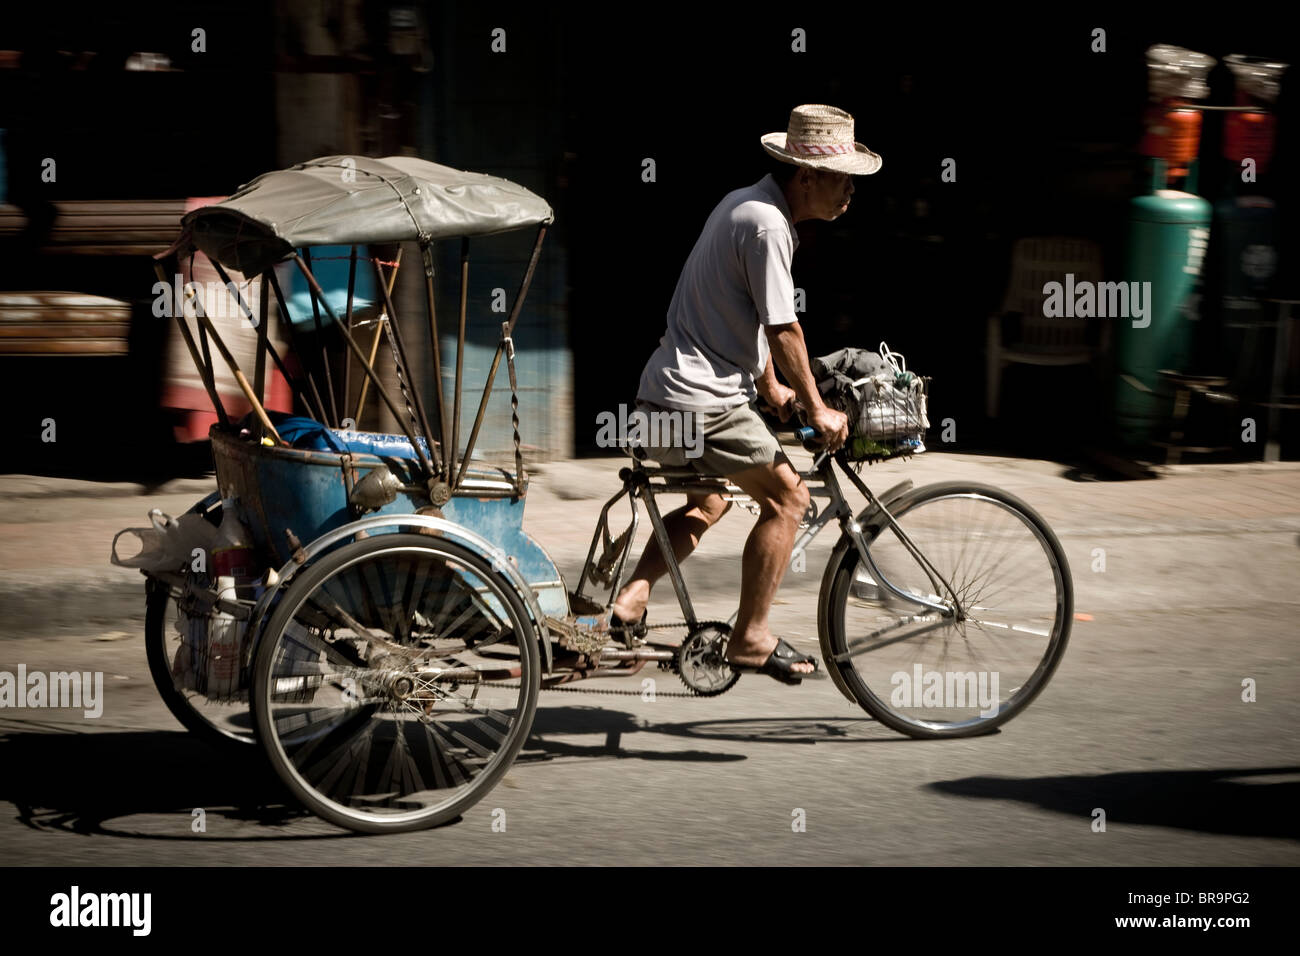 Ein Tuk-Tuk-Biclyclist auf der Straße fahren Stockfoto